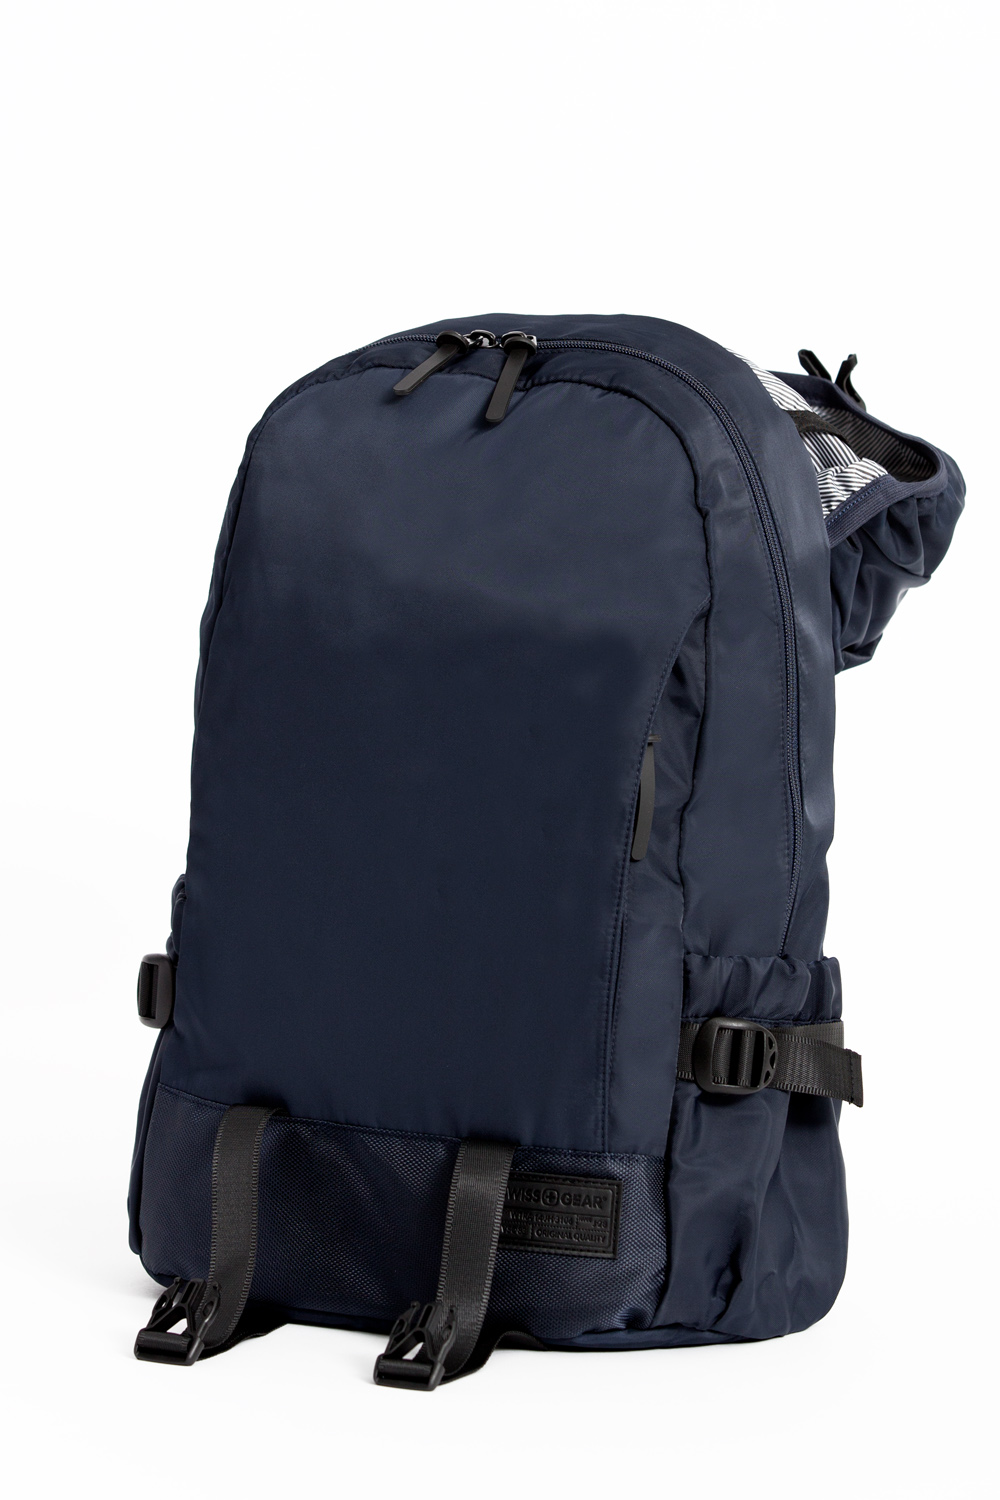 SWISSGEAR 2703 Laptop Backpack - Navy